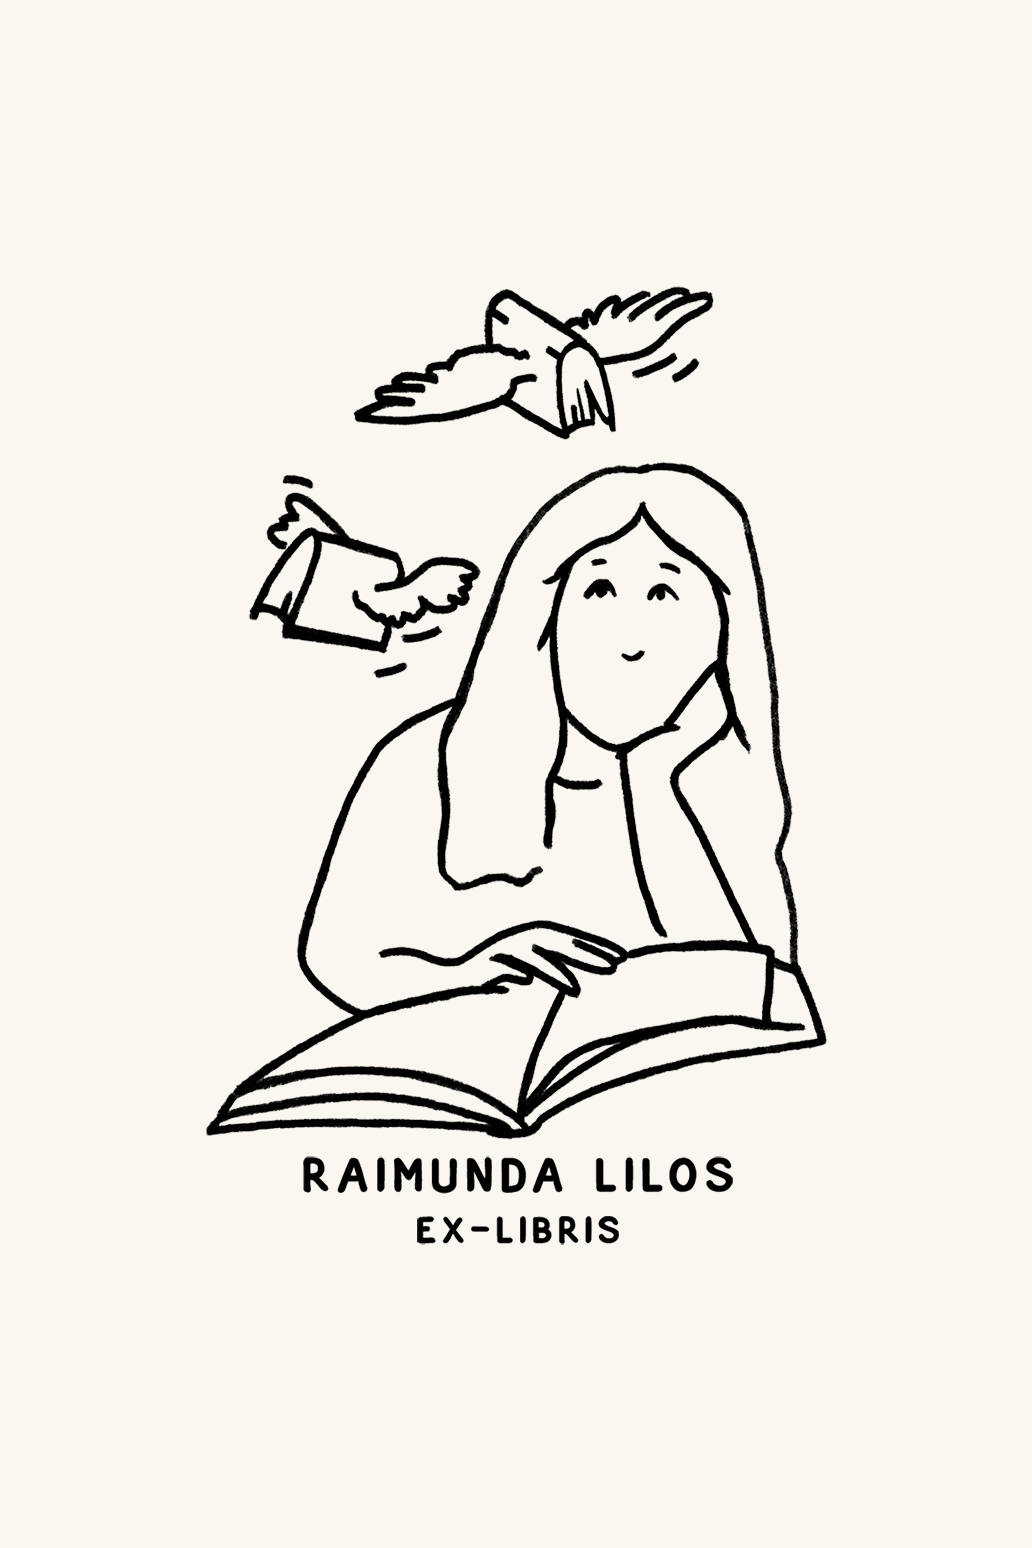 Dibujo de una mujer leyendo un libro, con dos libros volando sobre ella